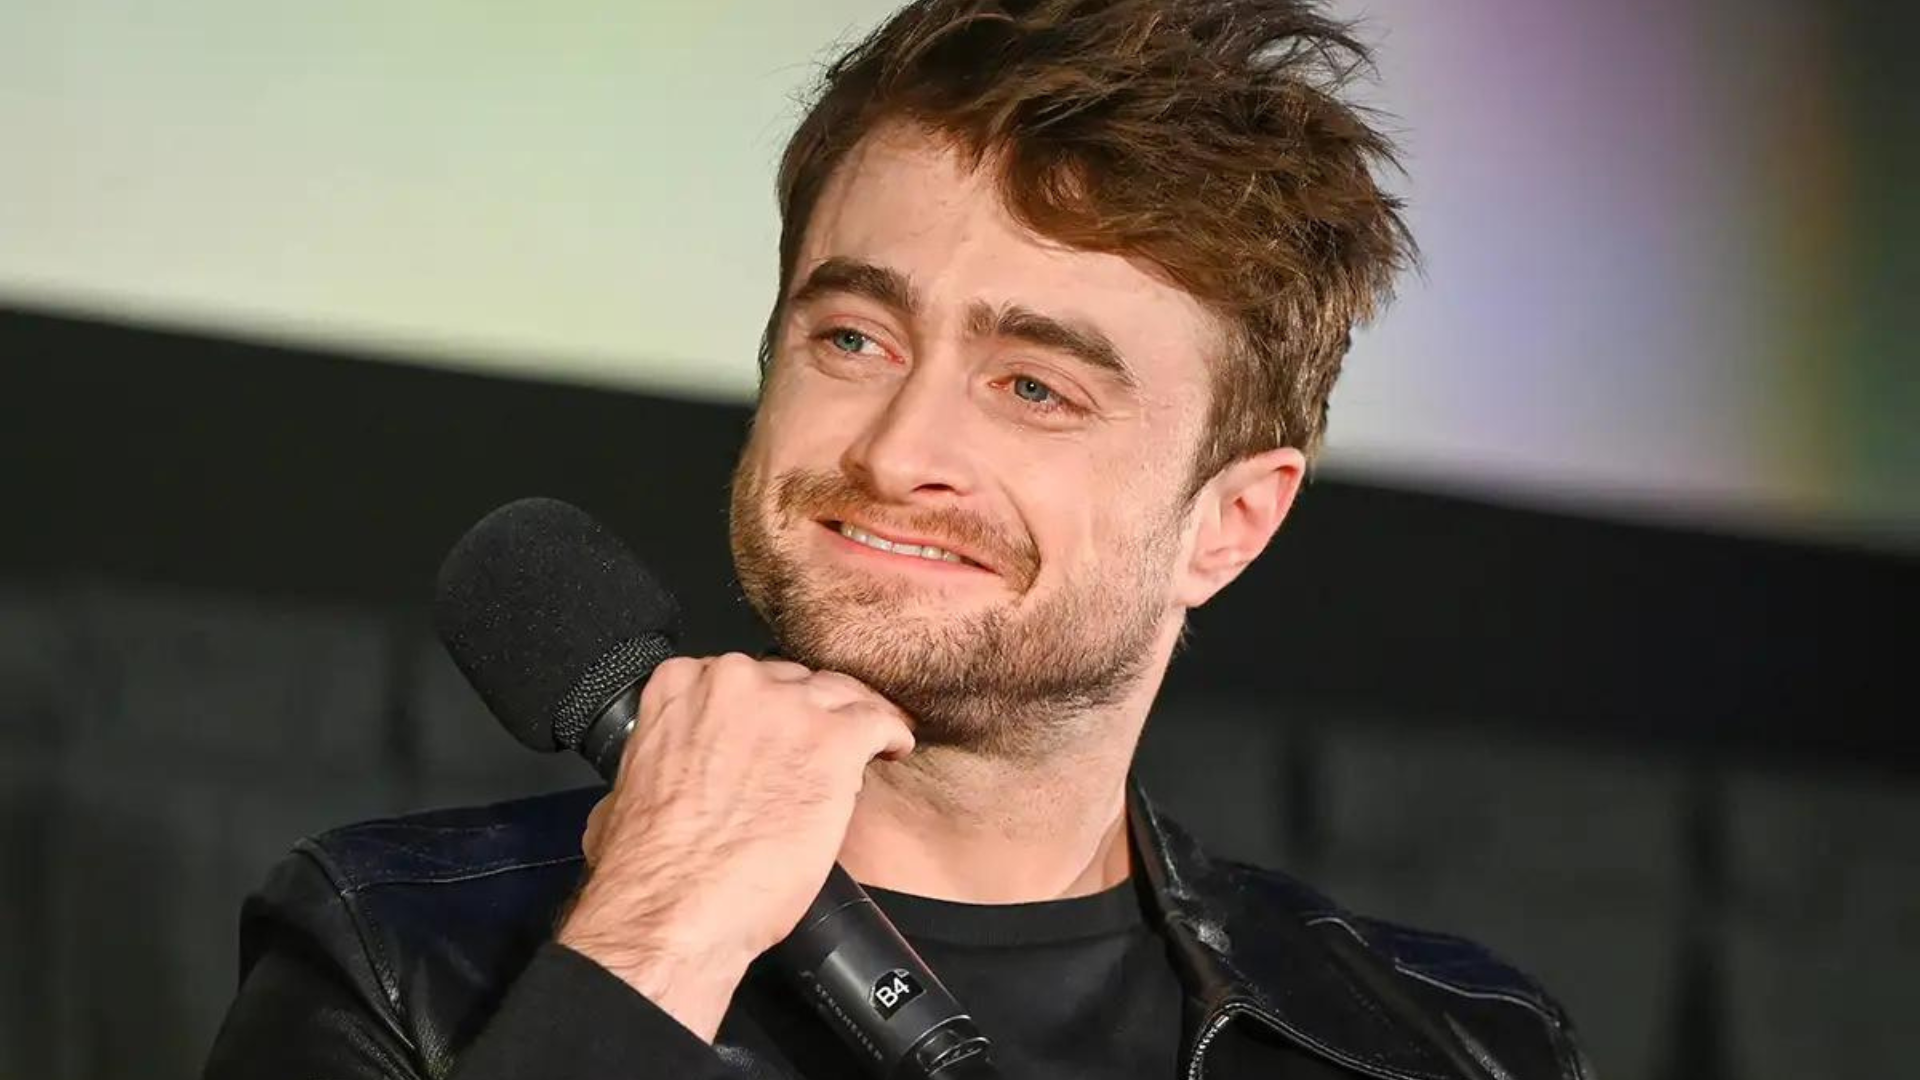 Daniel Radcliffe entra para ao elenco de Deadpool 3 em “papel secreto”, diz rumor